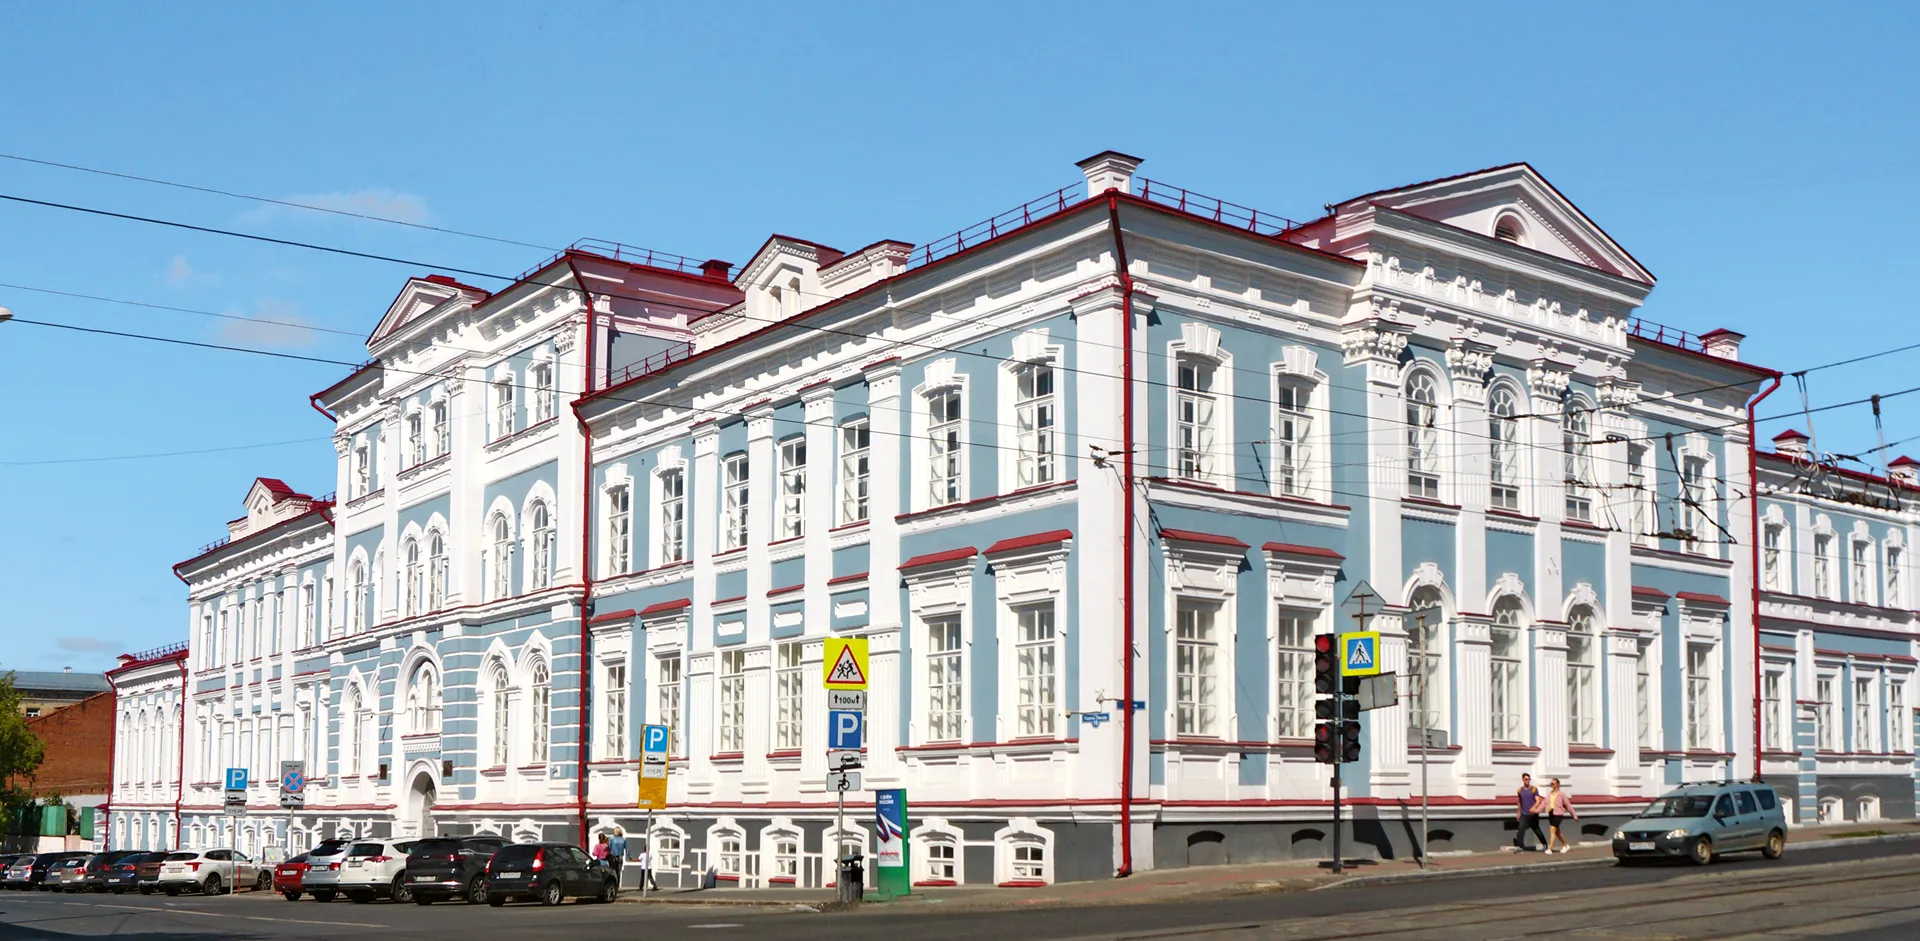 Пермский государственный институт искусств и культуры / The Perm State Institute of Arts and Culture